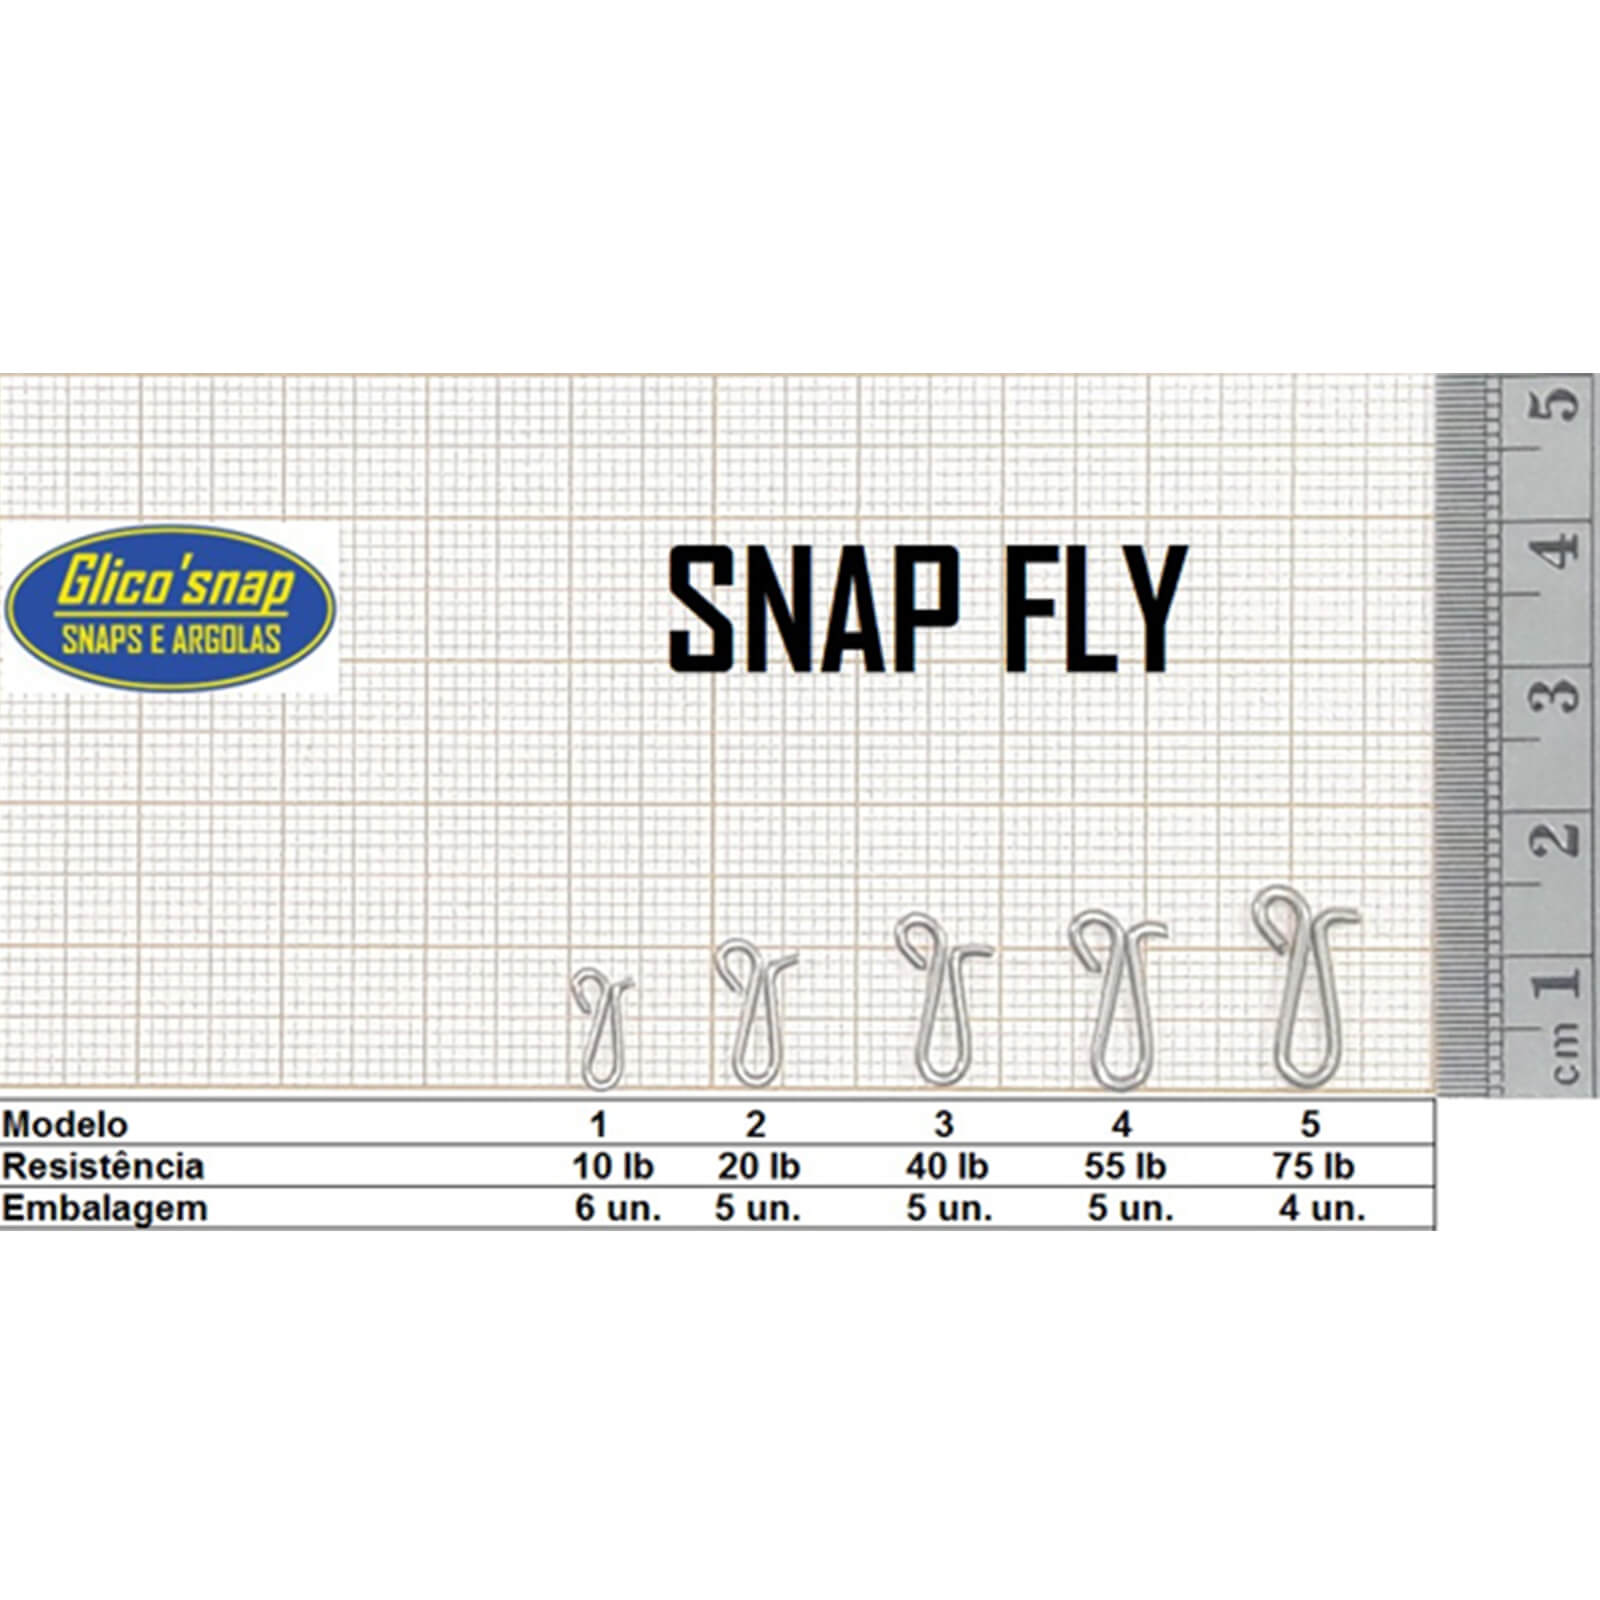 Snap Fly Mod 4 c/Girador 55lb 5un Glico' Snap